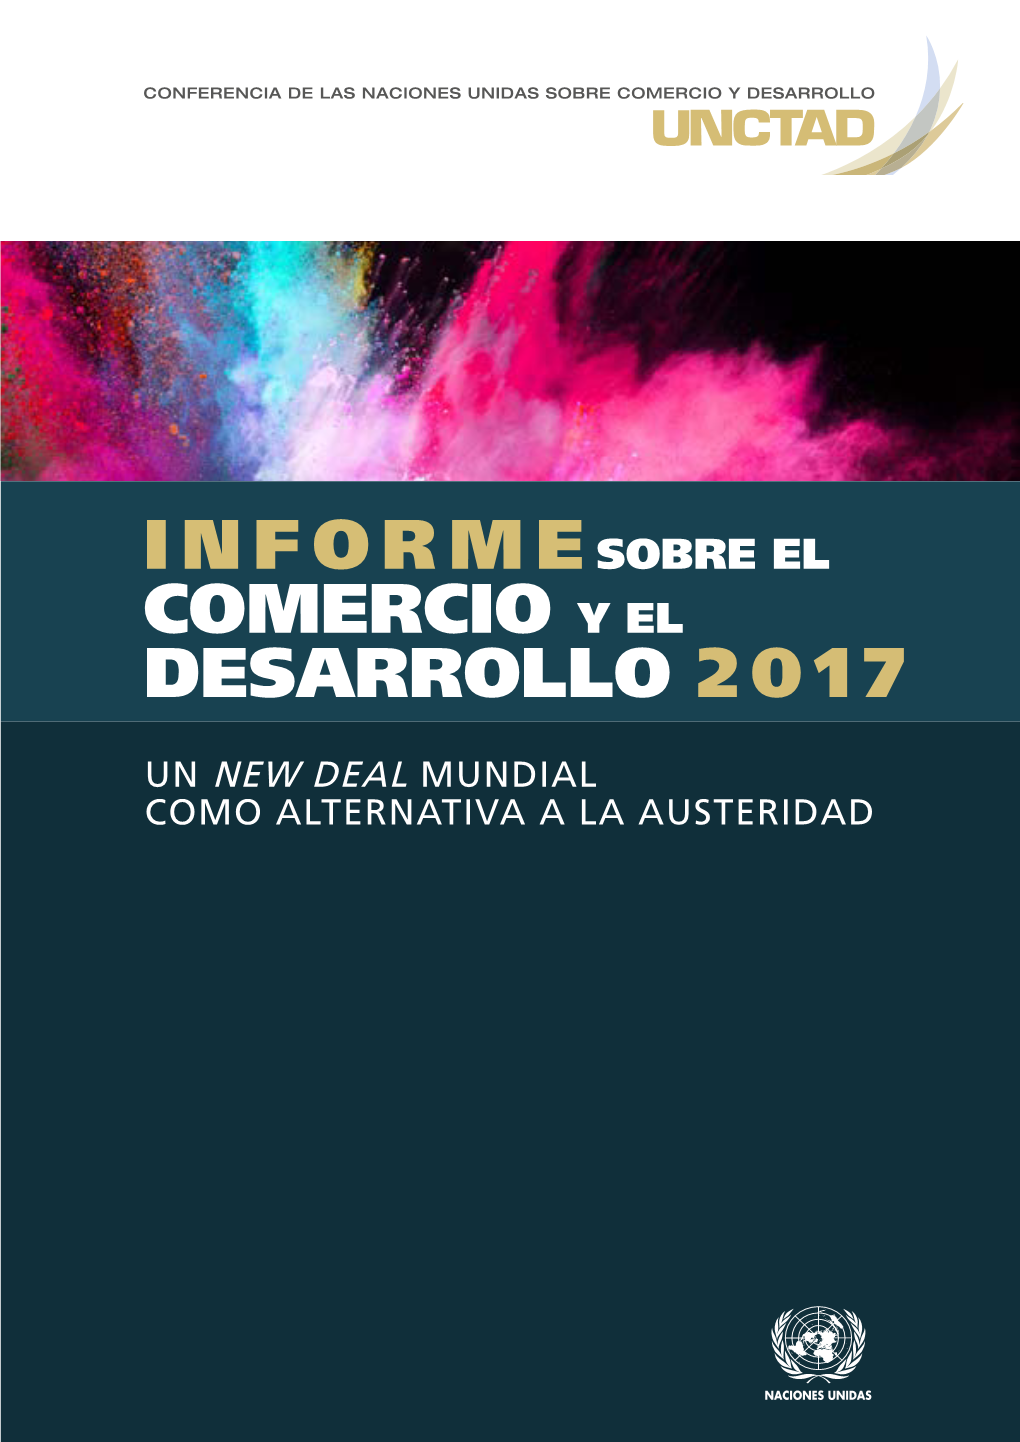 INFORME SOBRE EL COMERCIO Y EL DESARROLLO, 2017 UN NEW DEAL MUNDIAL COMO ALTERNATIVA a LA AUSTERIDAD